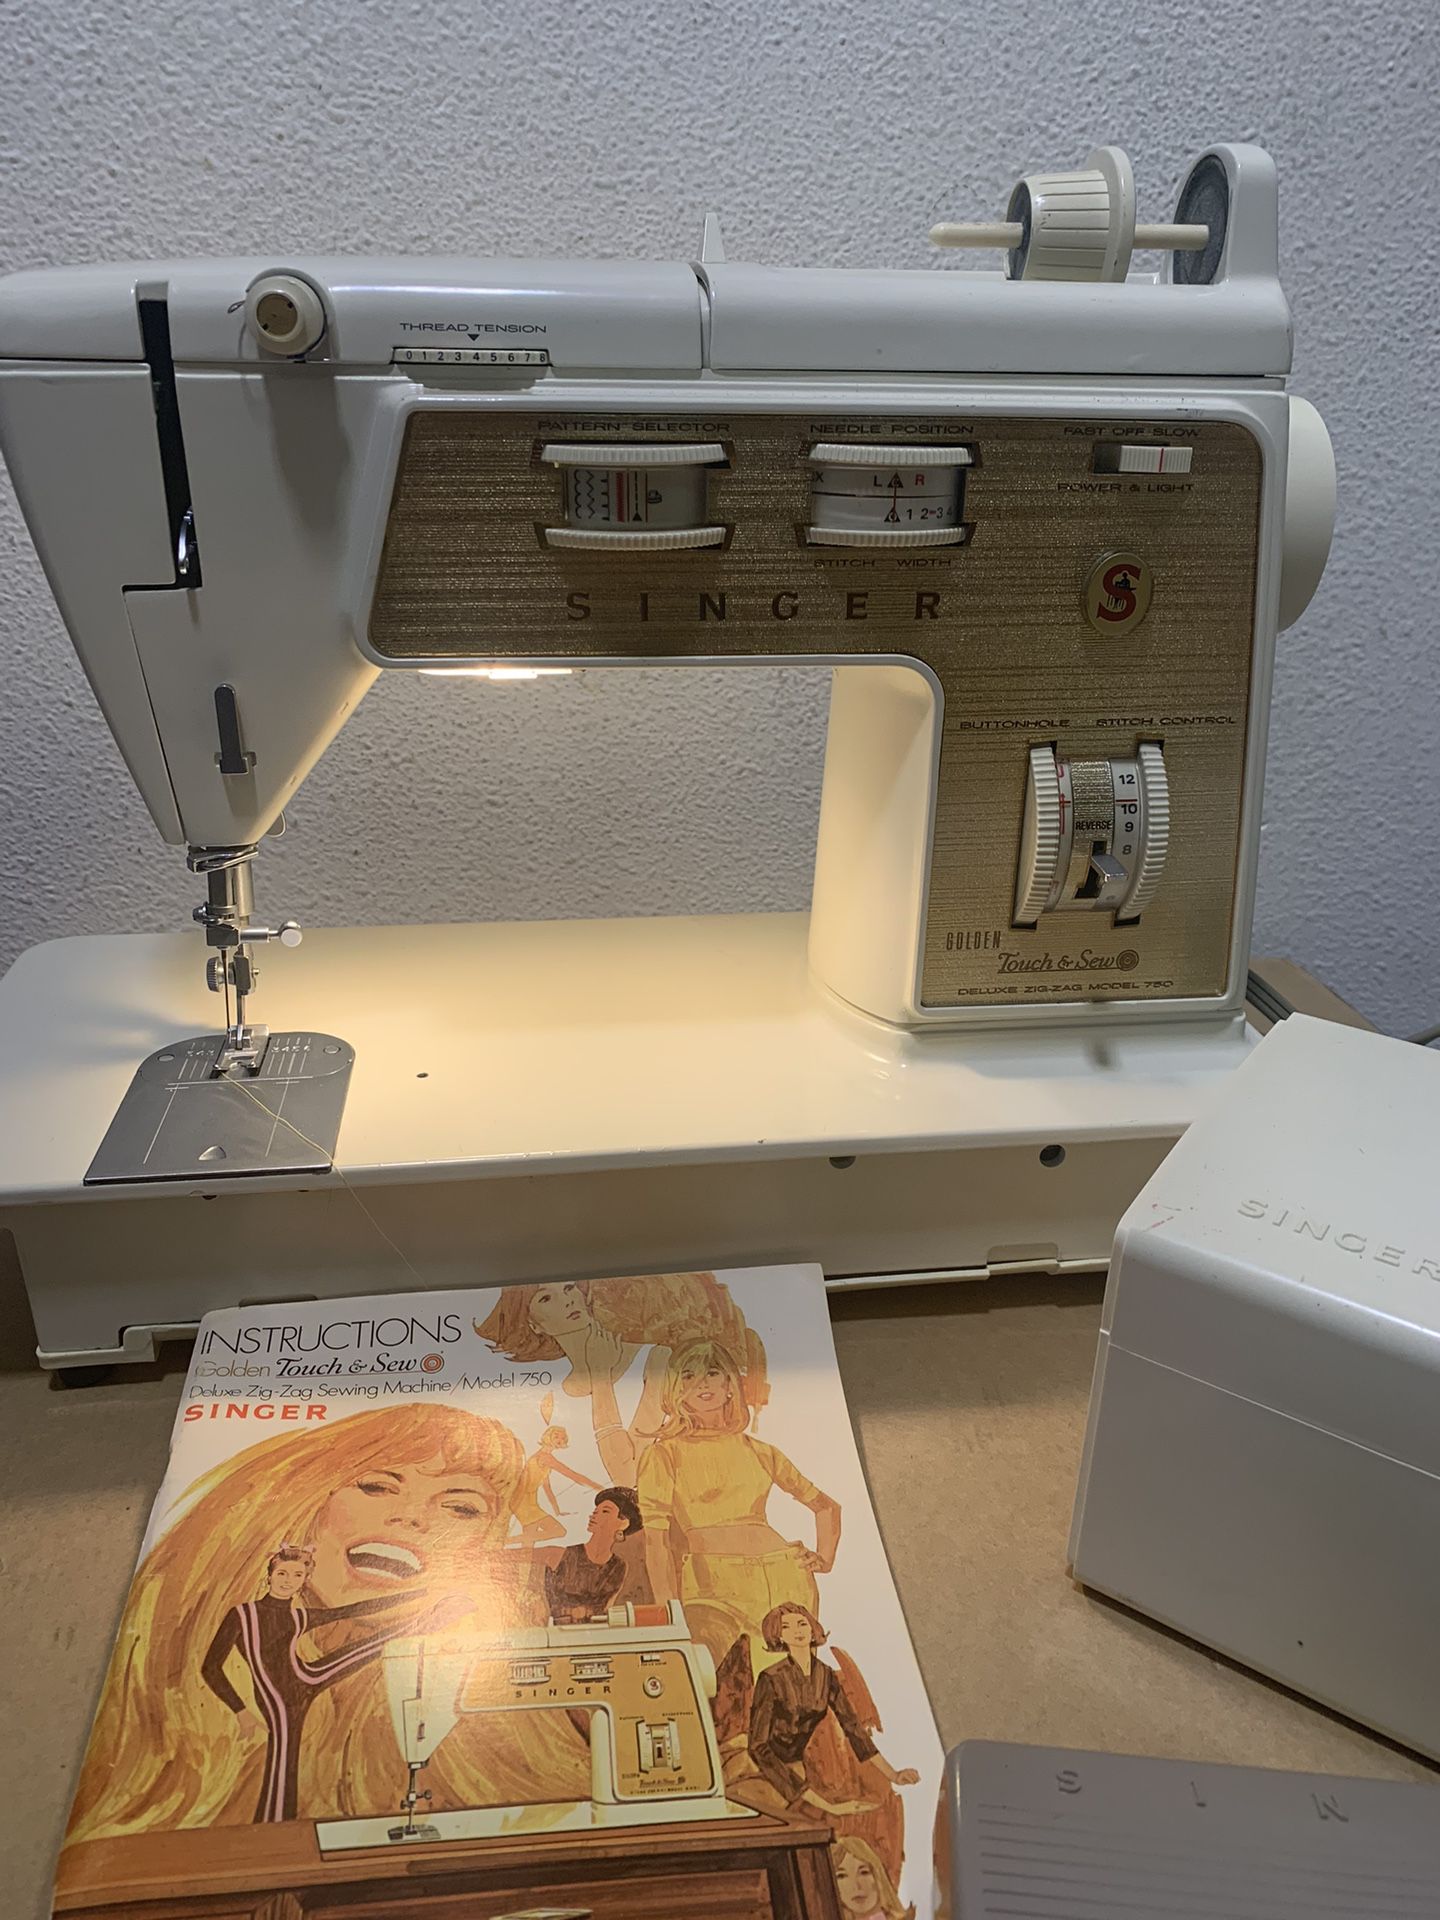 Sewing Machine Singer 